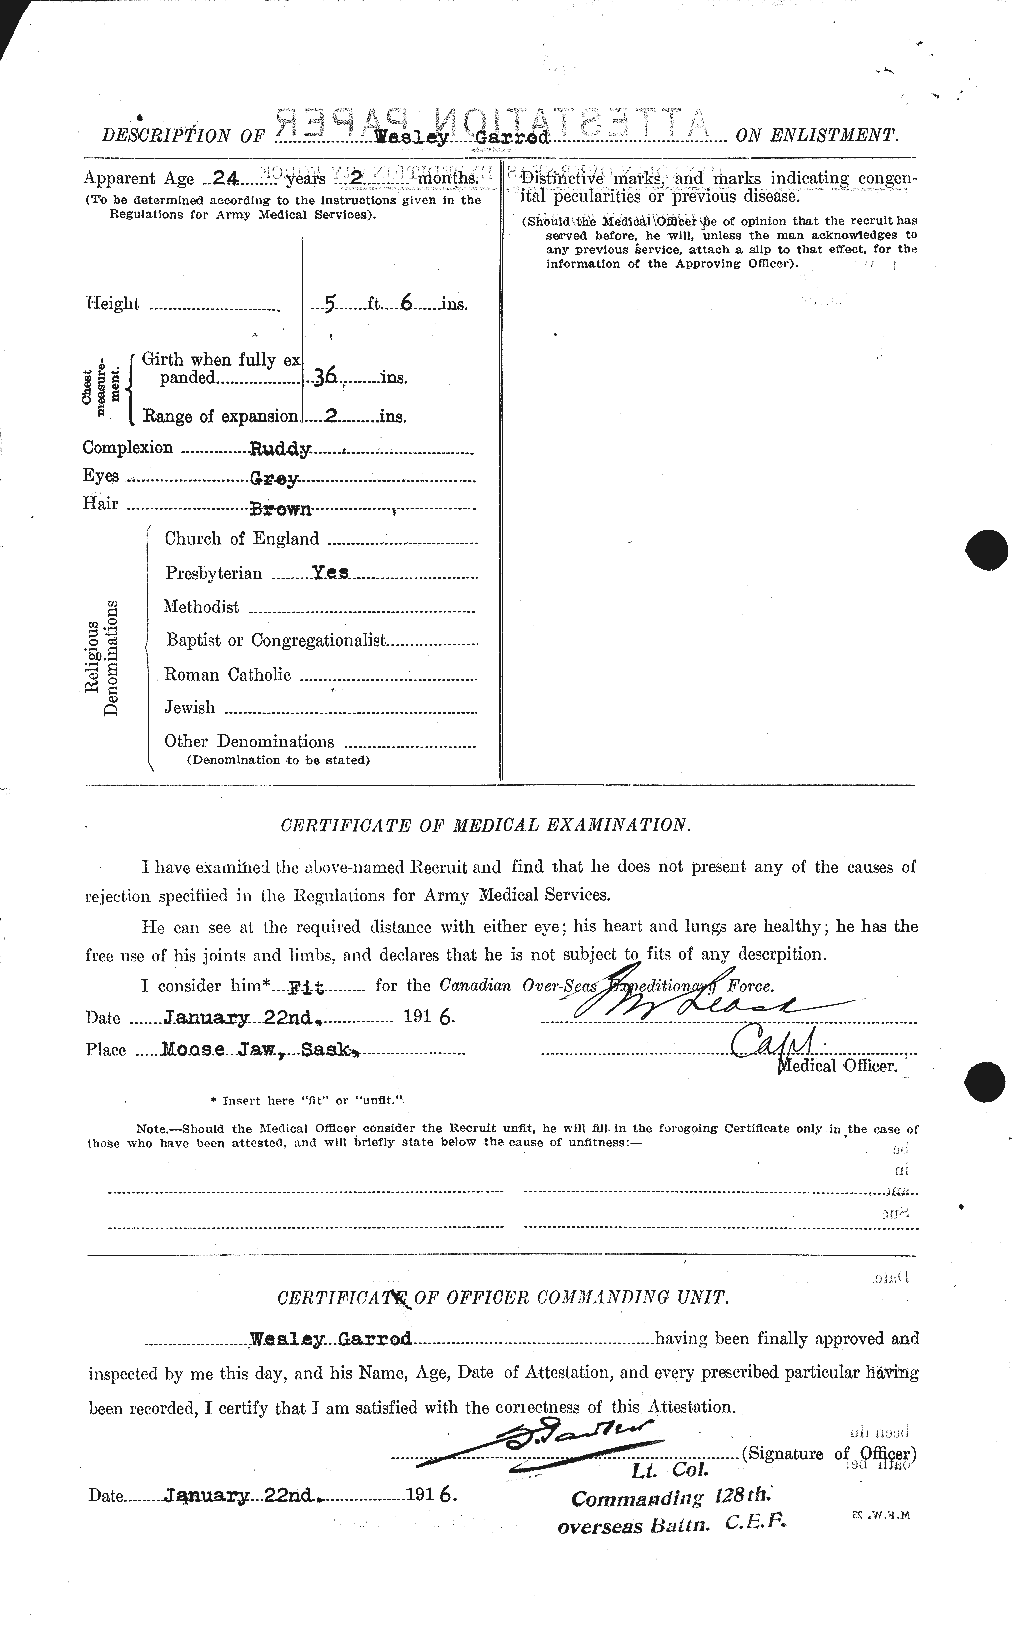 Dossiers du Personnel de la Première Guerre mondiale - CEC 343455b